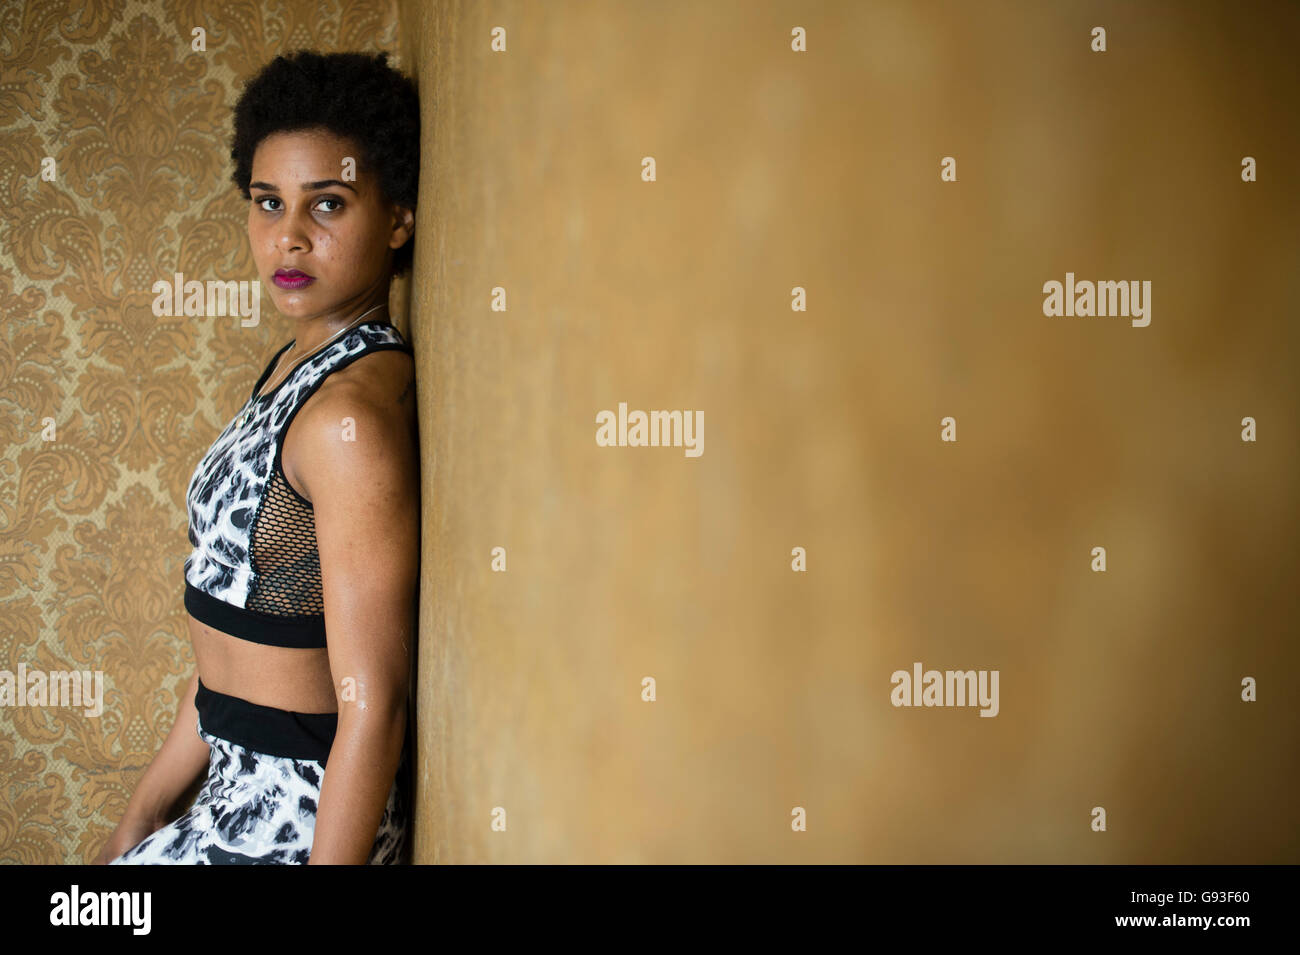 La beauté en déréliction : la photographie de mode d'une jeune afro-caraïbes femme fille seule dans un bâtiment abandonné à l'abandon de porter les vêtements de style de remise en forme, à la sensuelle et moody Banque D'Images